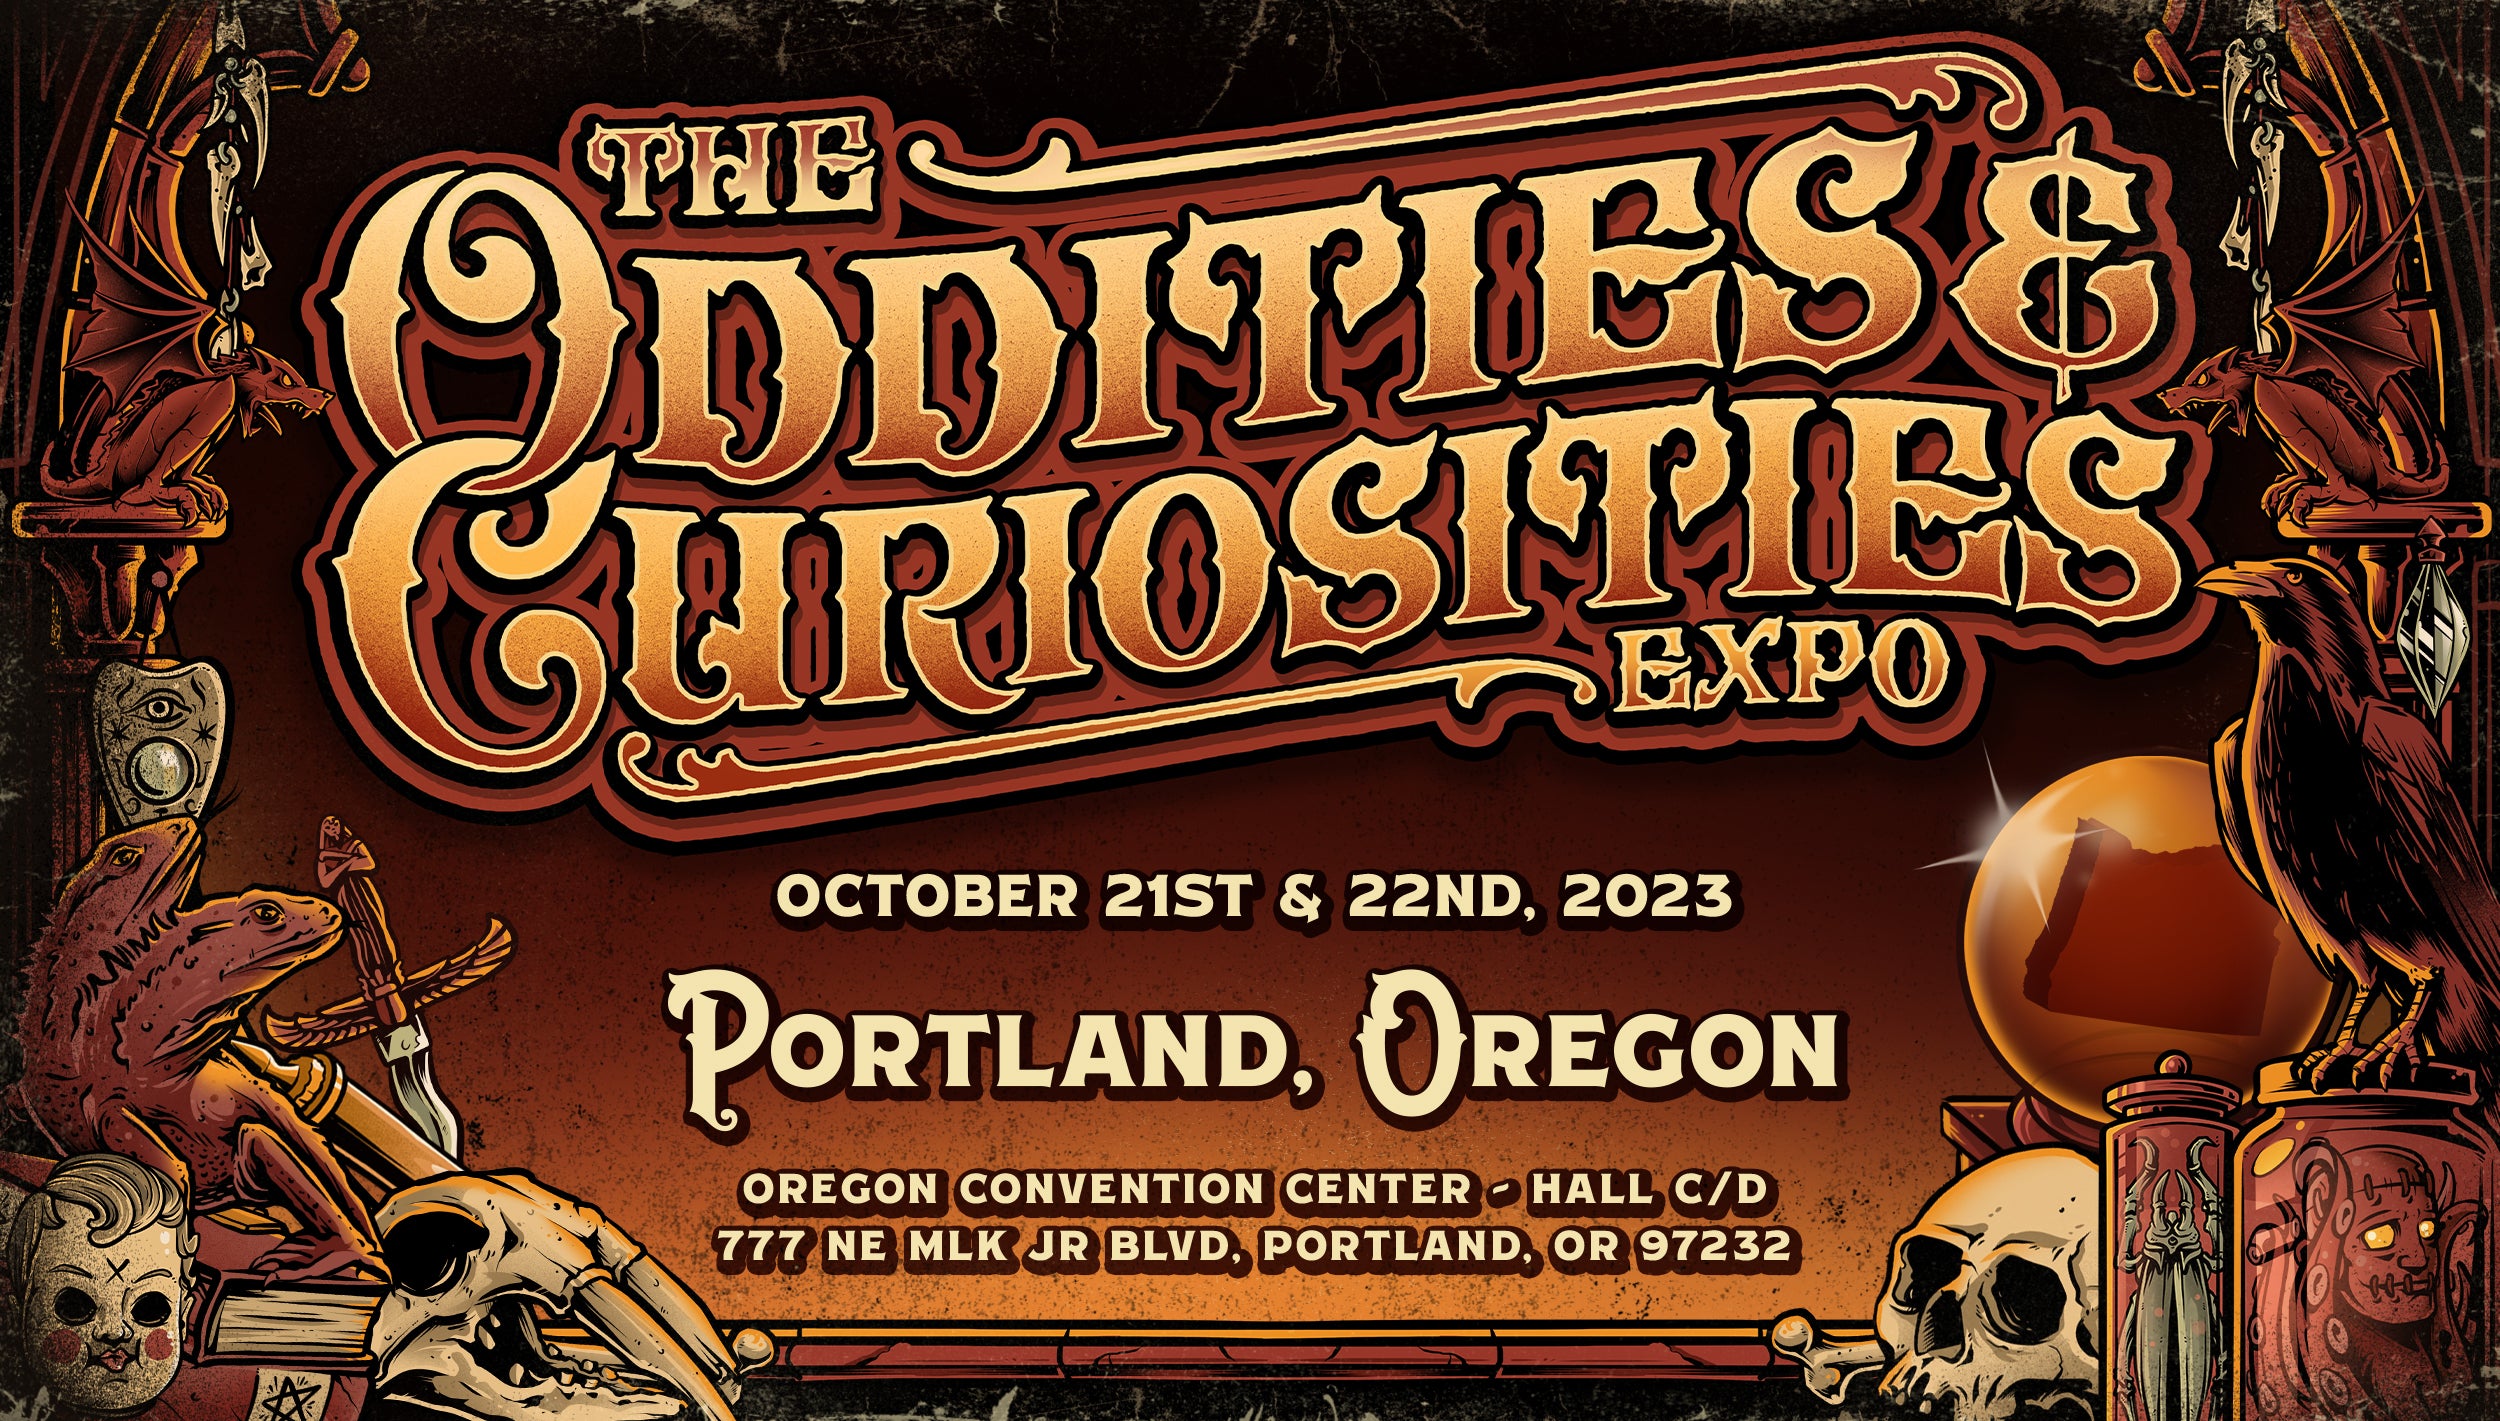 The Oddities & Curiosities Expo